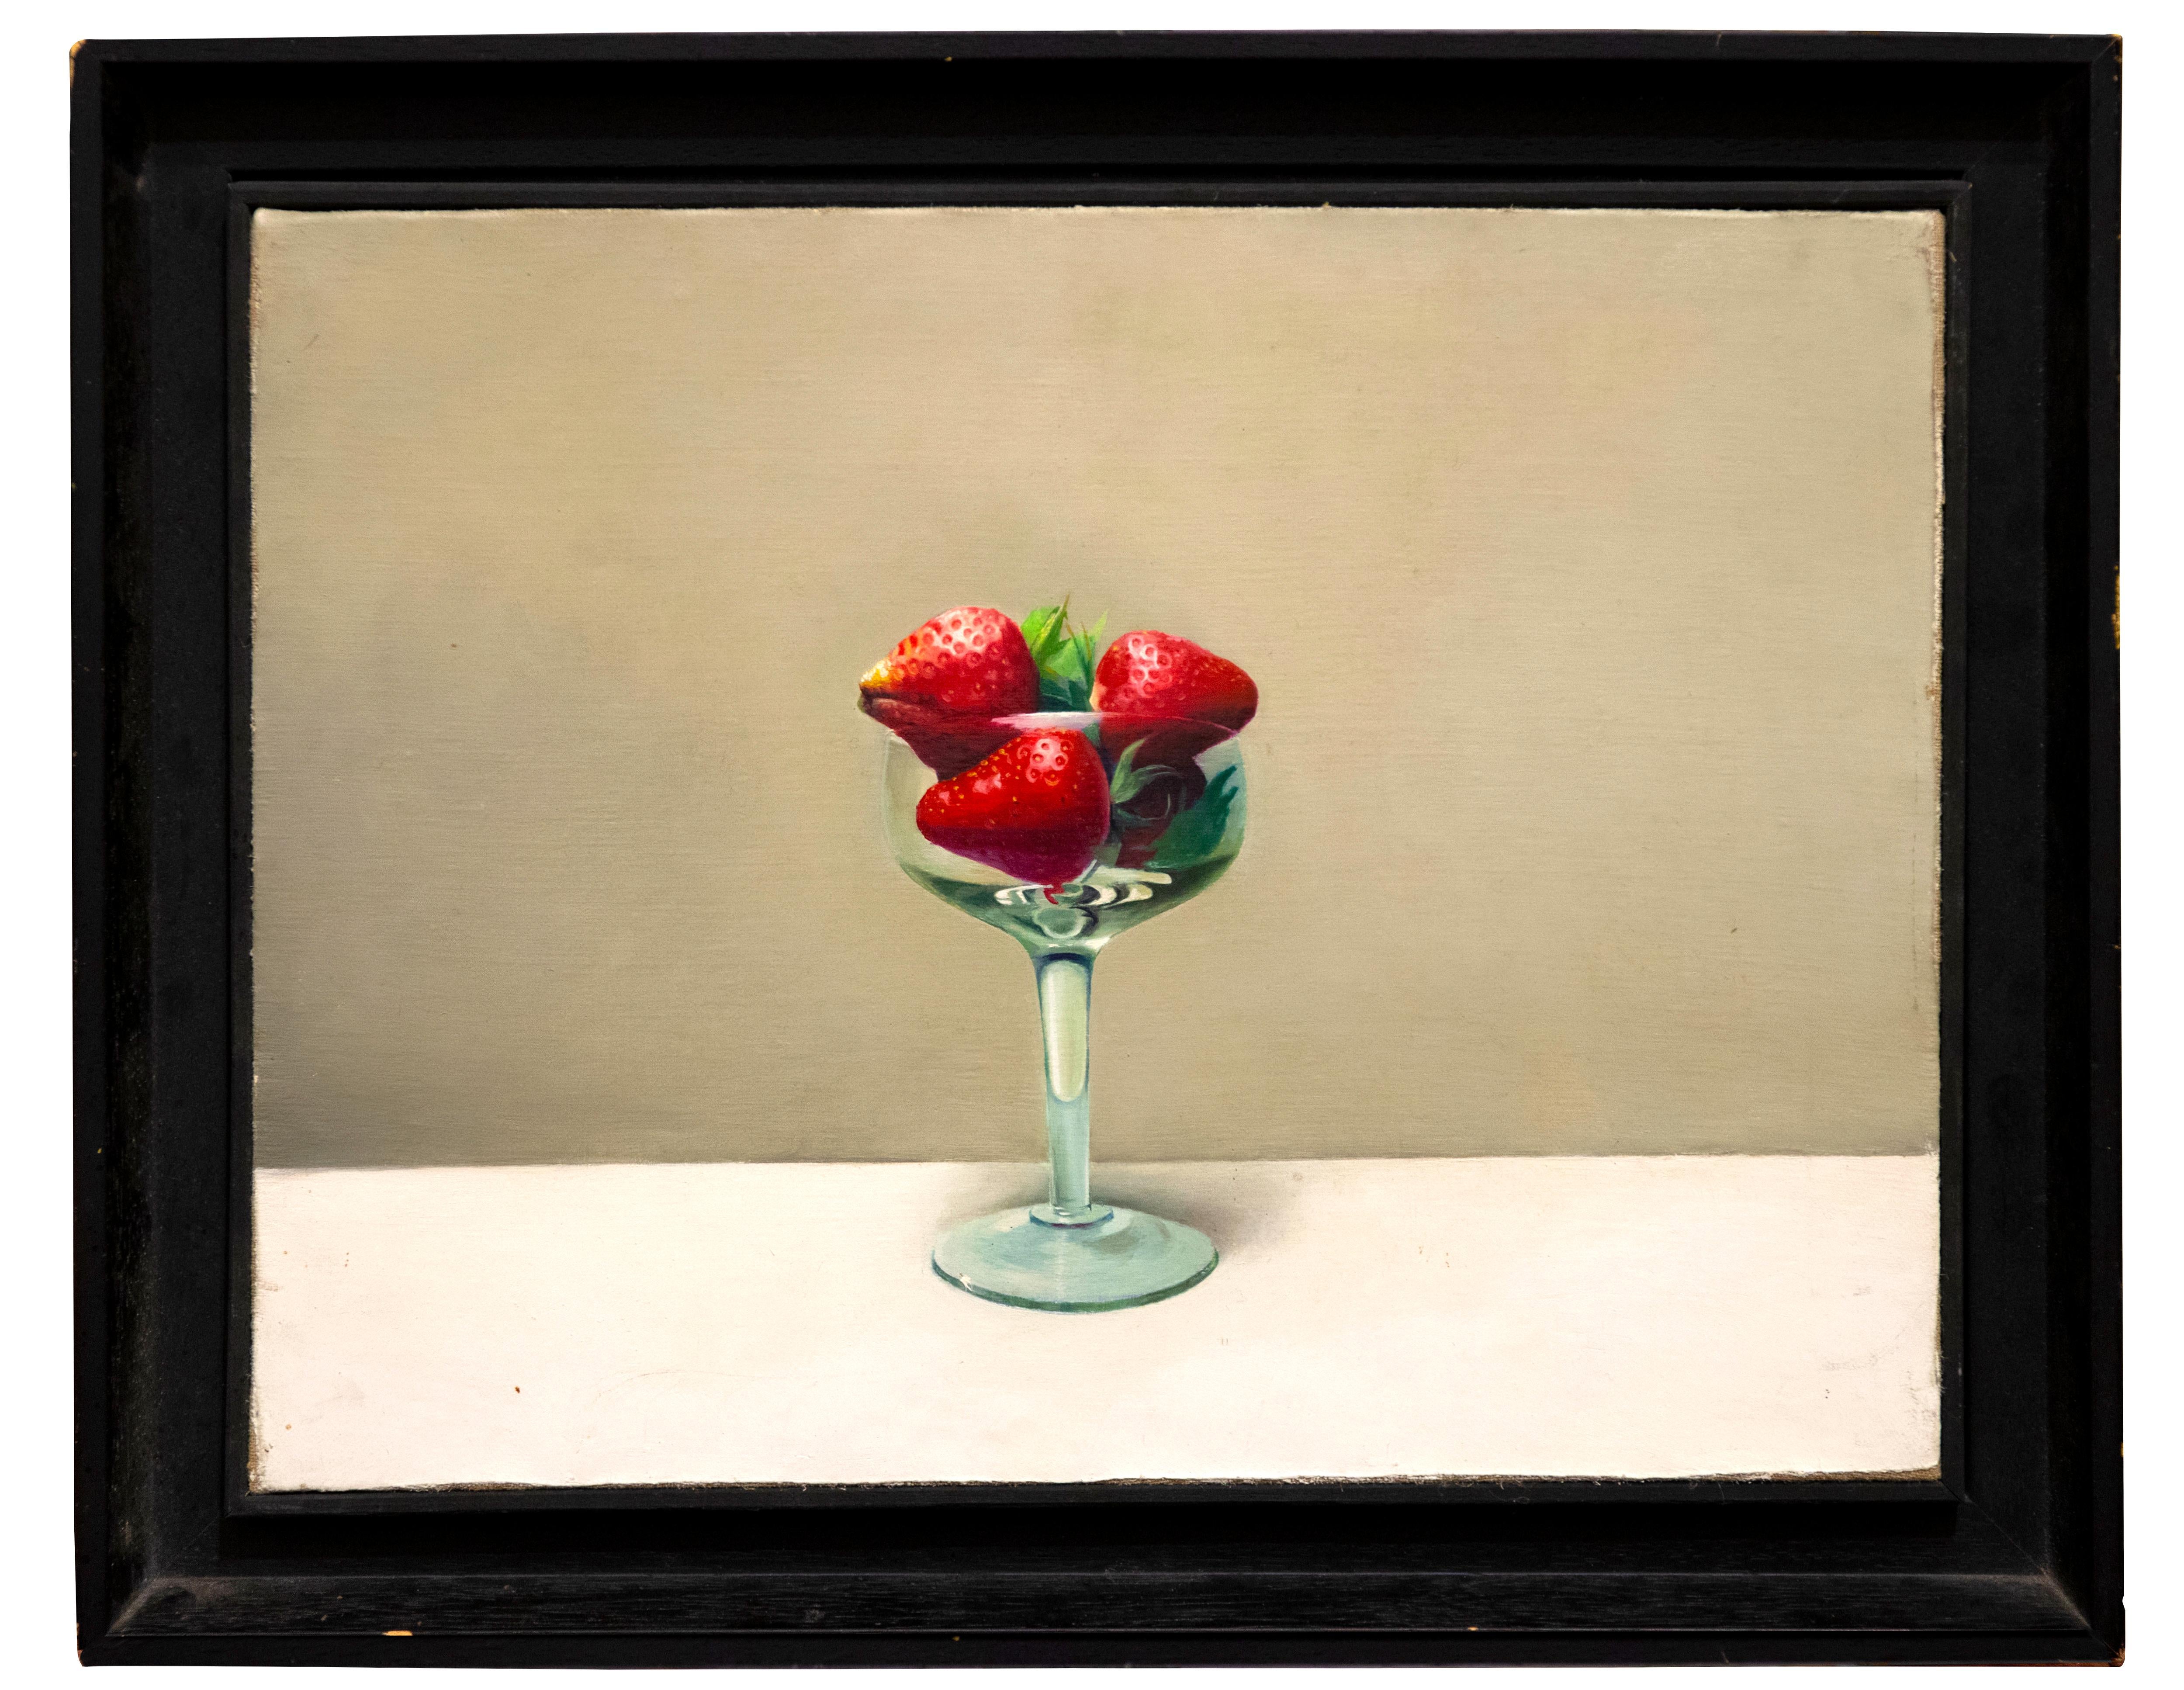  Cup mit Erdbeerbeeren – Öl auf Leinwand von Zhang Wei Guang (Mirror) – 2000